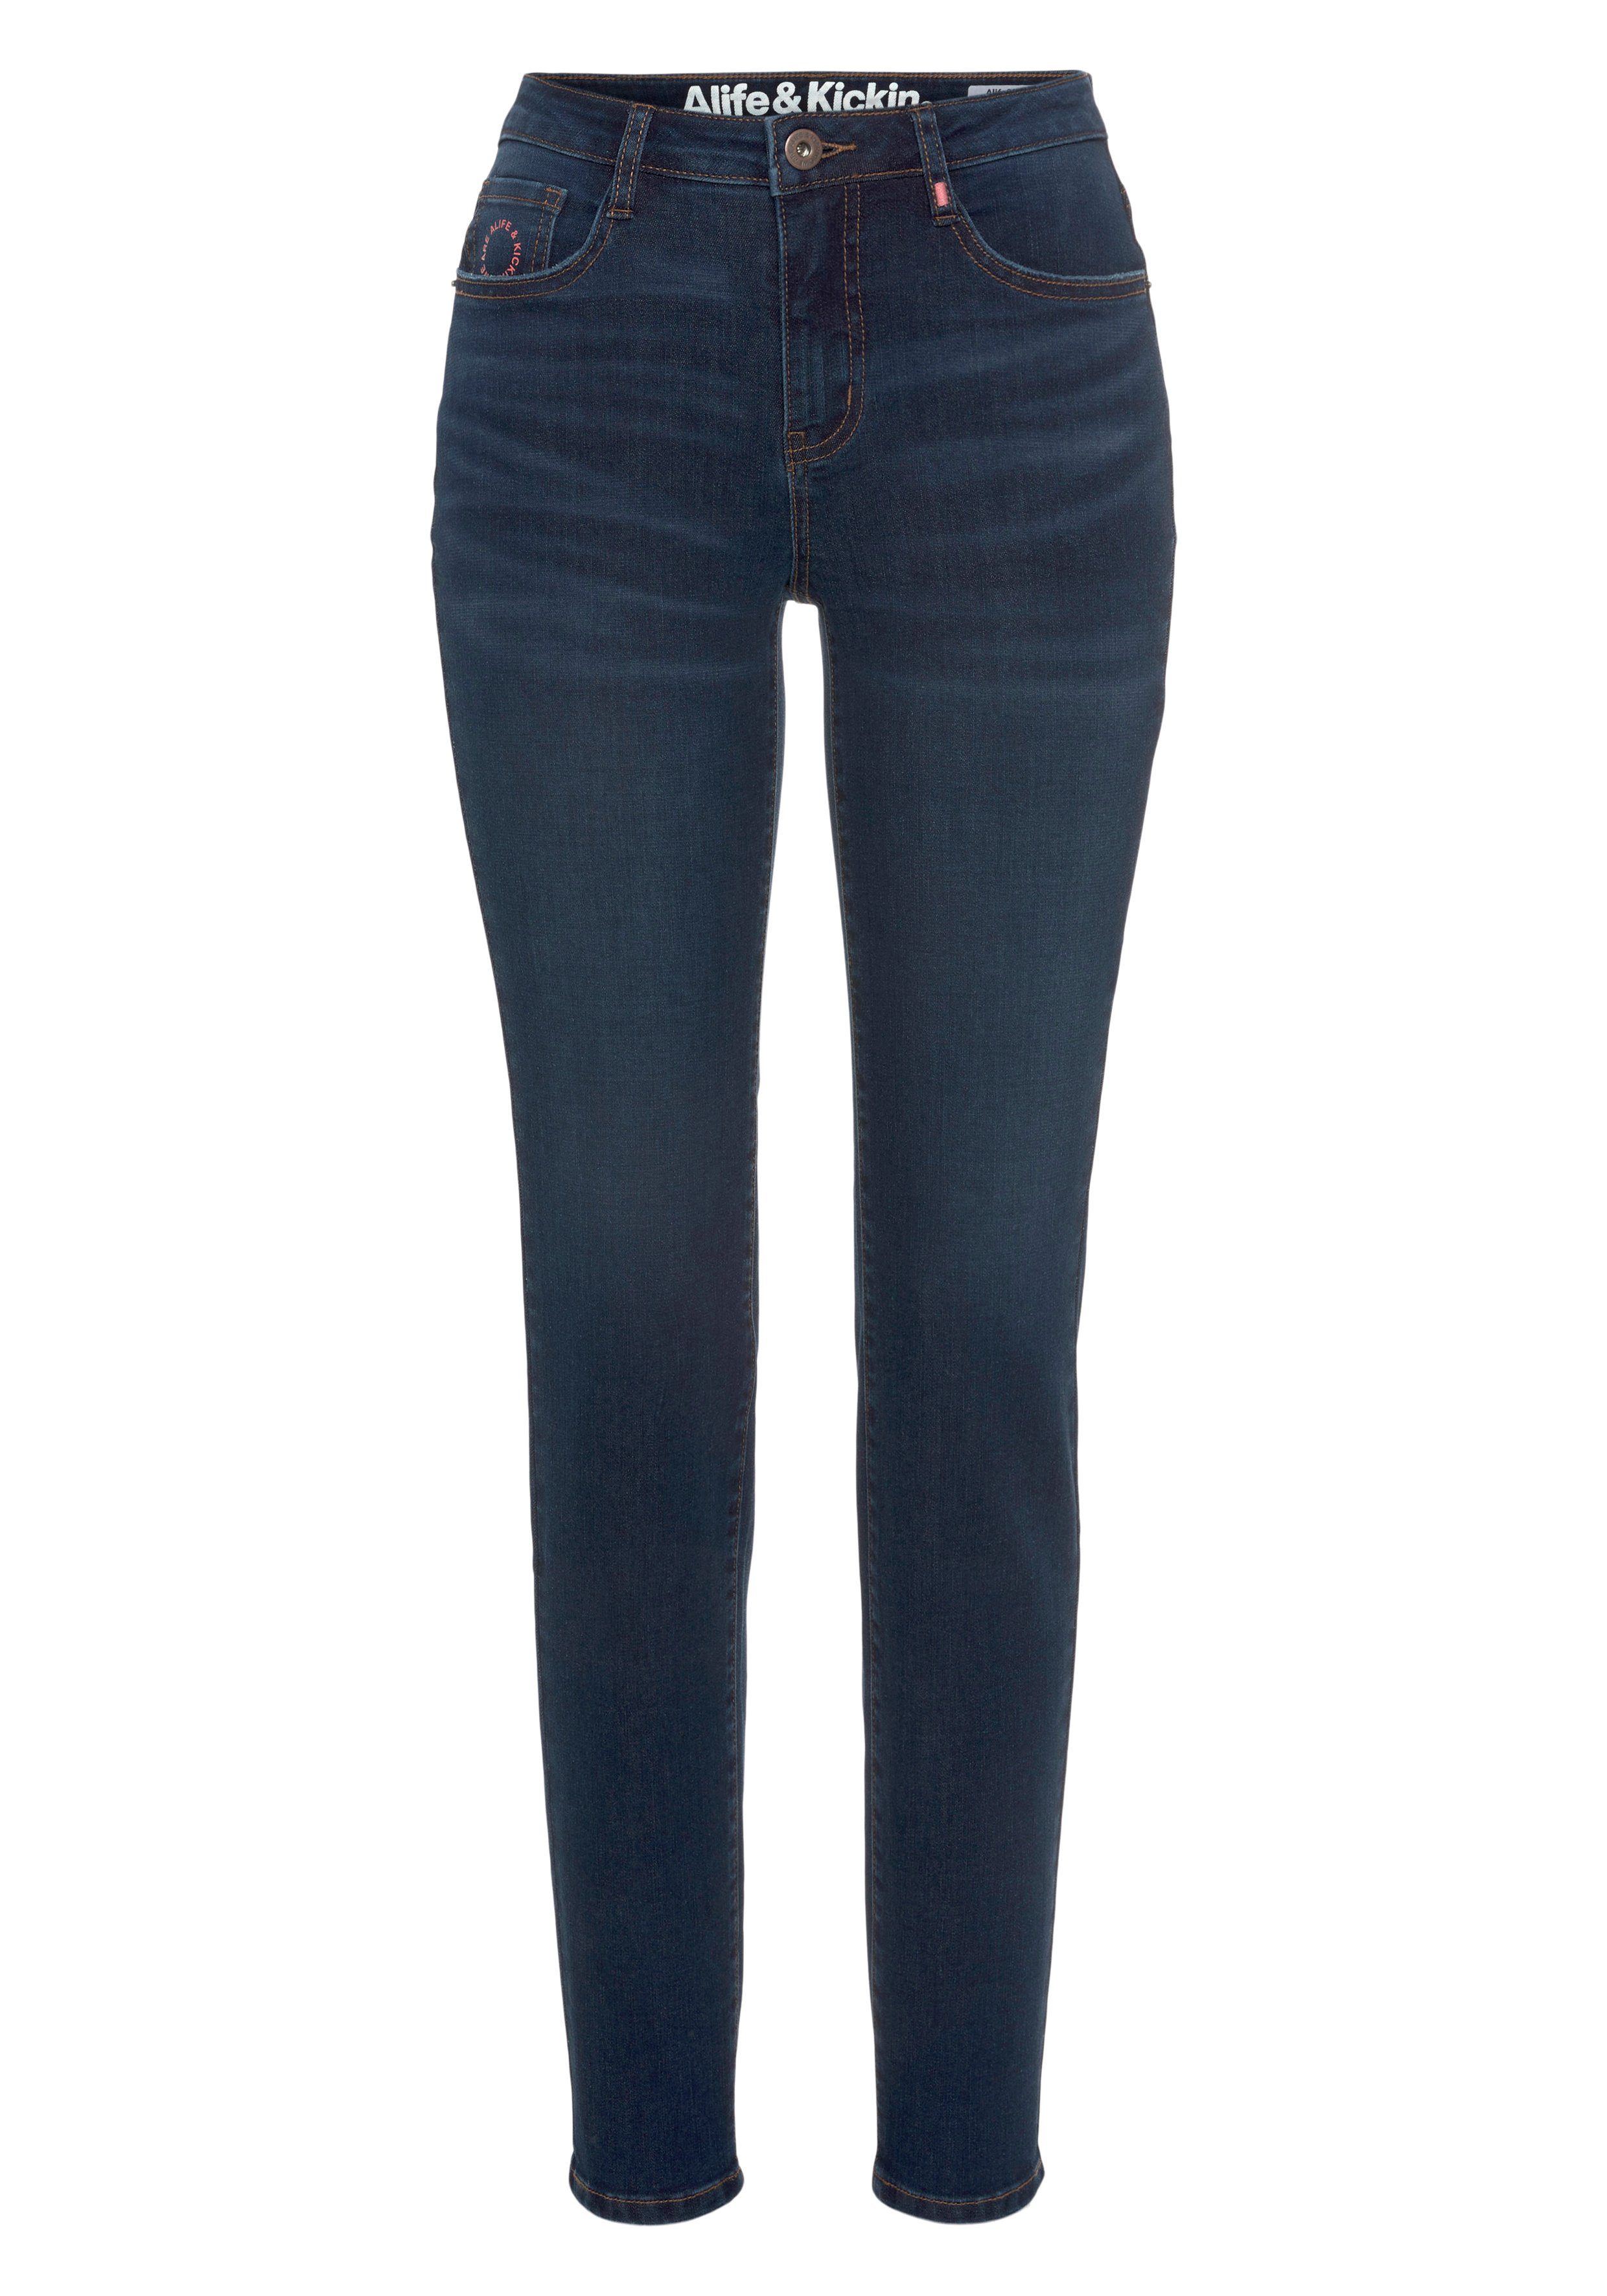 Alife & KOLLEKTION High-waist-Jeans Kickin NEUE dark used blue NolaAK Slim-Fit